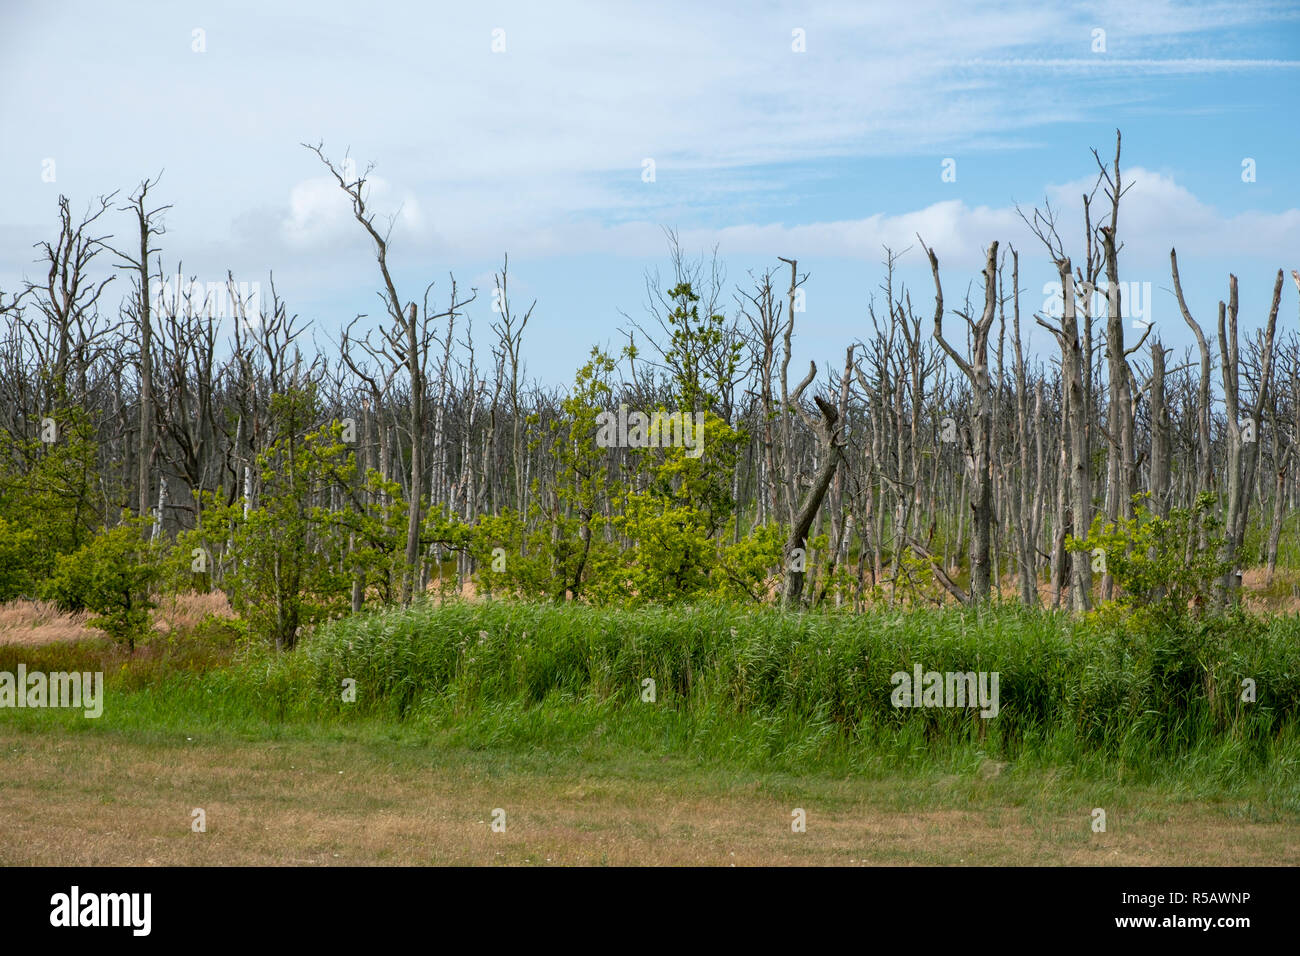 Dead trees in wetland near the Sundische Wiesen, Western Pomerania Lagoon Area National Park, Fischland-Darss-Zingst, Mecklenburg-Vorpommern, Germany Stock Photo